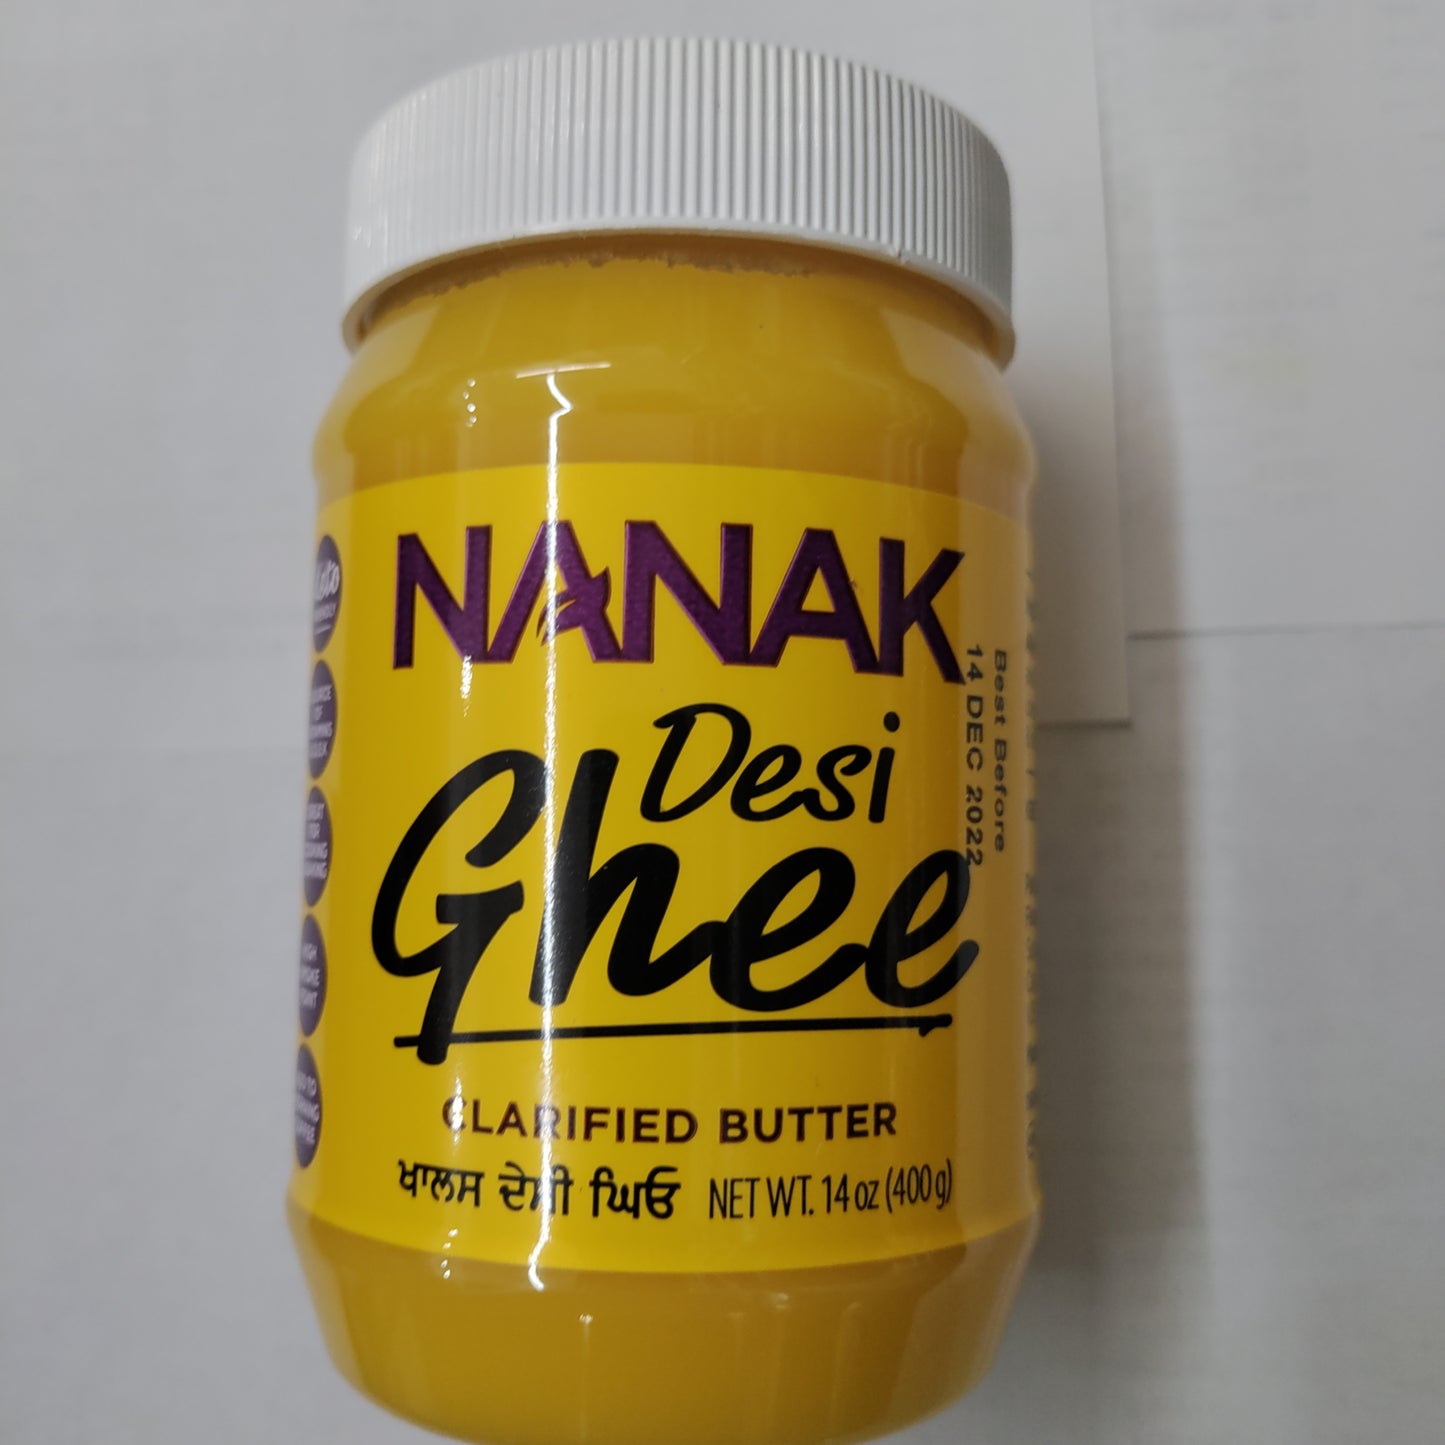 Nanak Ghee 14 oz